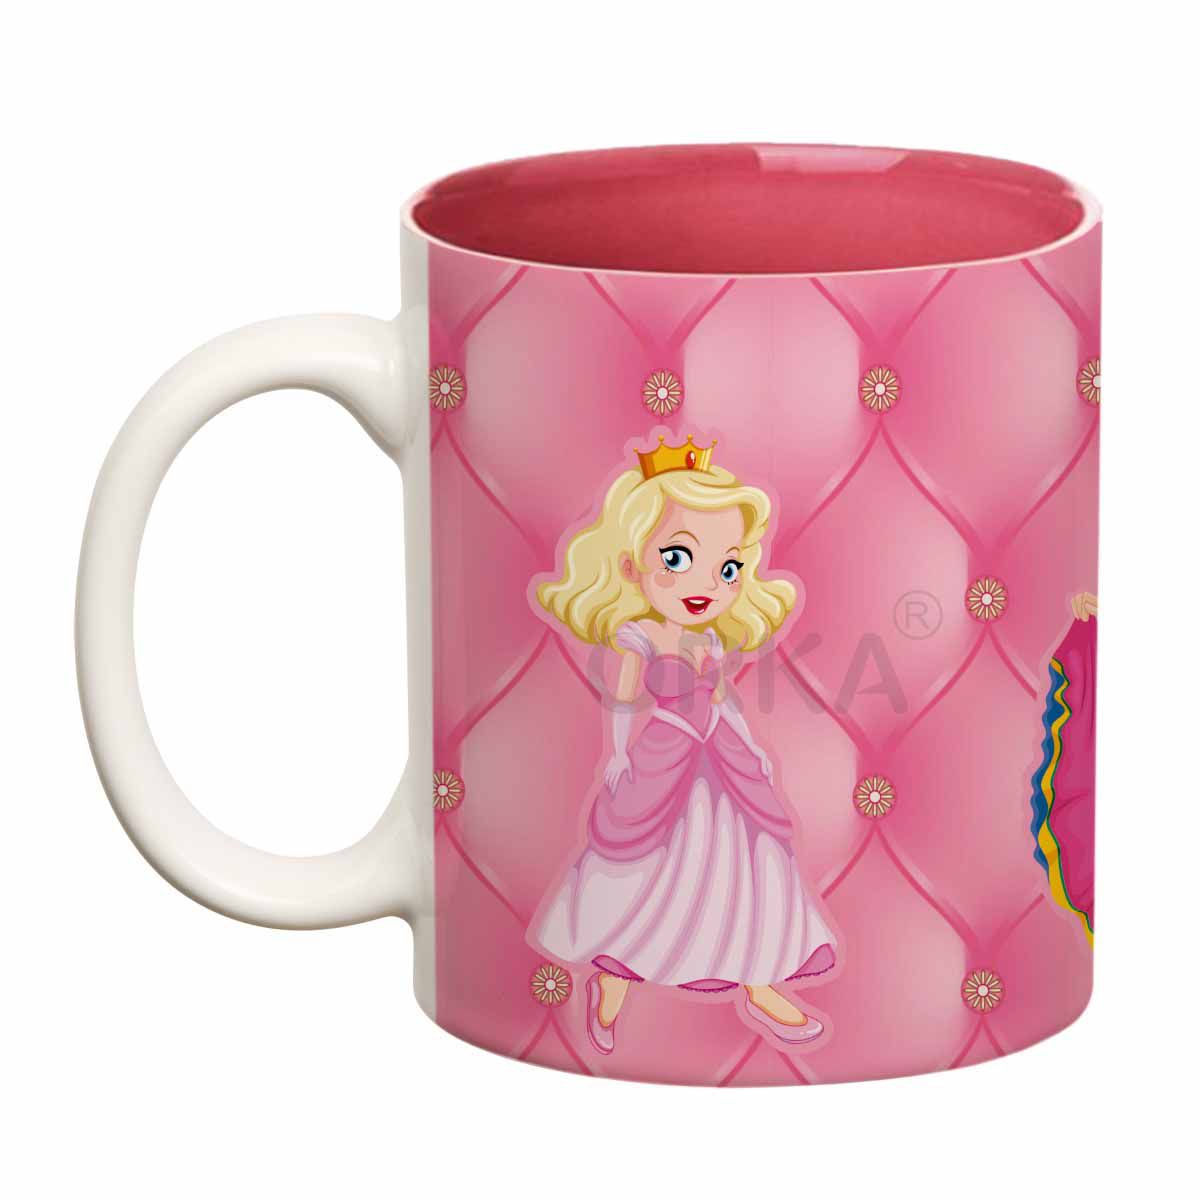 ORKA Coffee Mug Princess Theme 11 Oz 4  